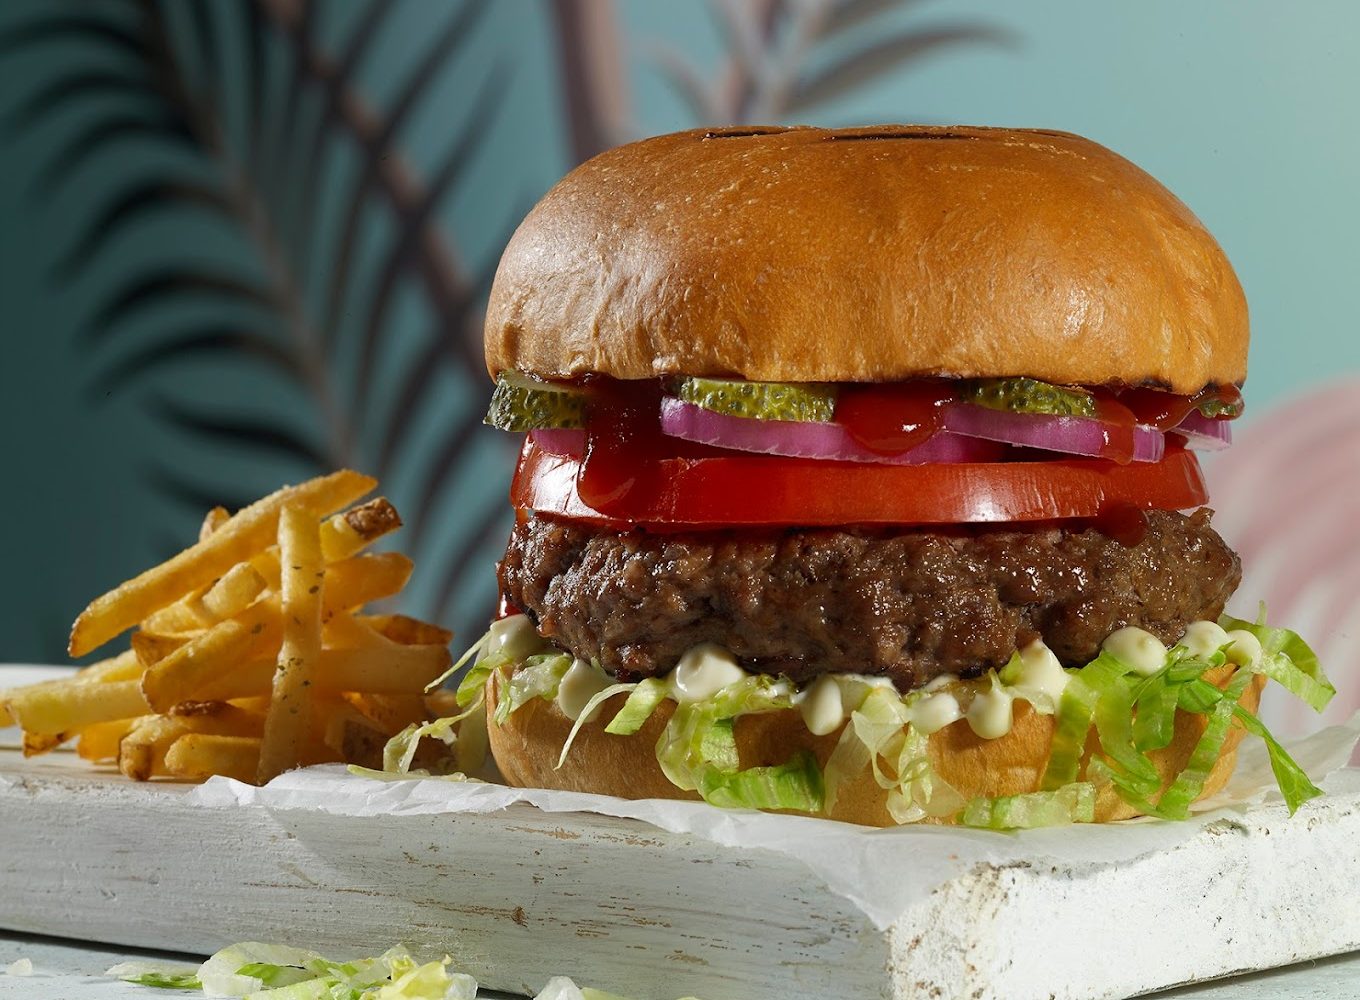 Έργο τέχνης: Το burger με τη θεϊκή γεύση που δεν θα μοιραστείς ποτέ με κανέναν